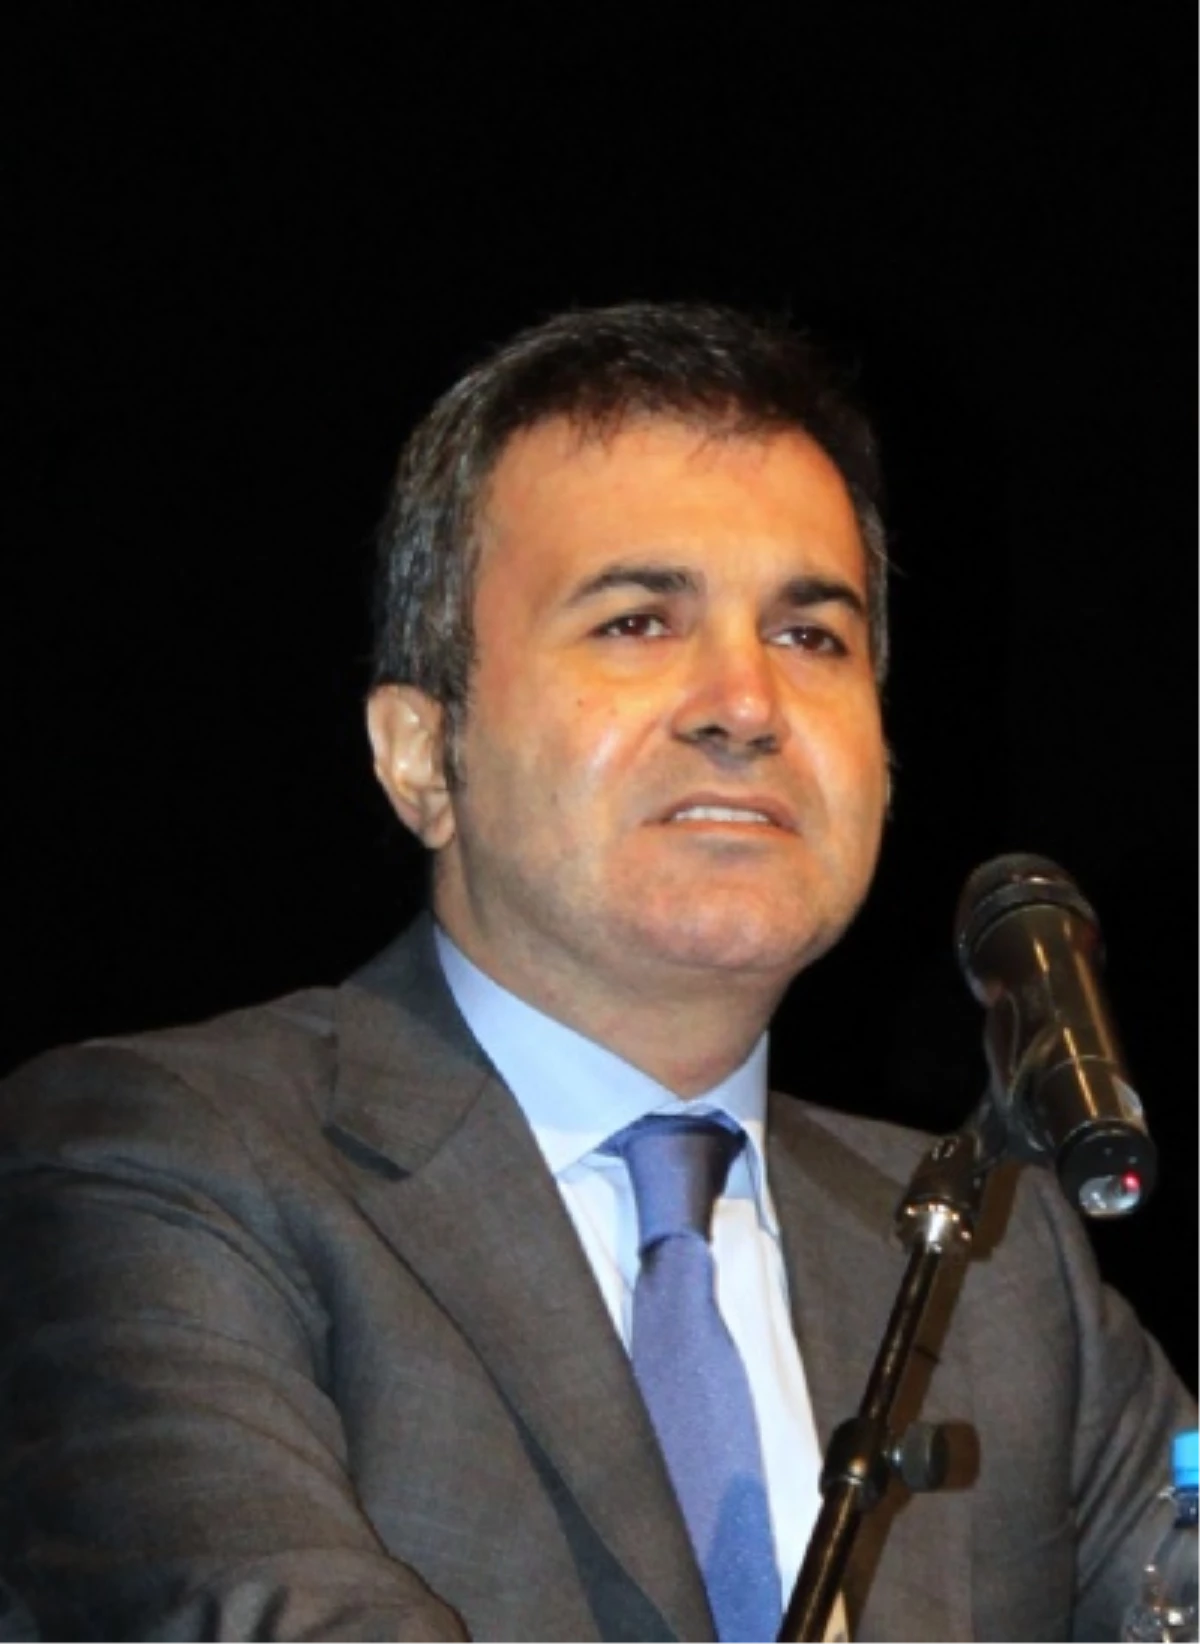 Kültür ve Turizm Bakanı Çelik Açıklaması